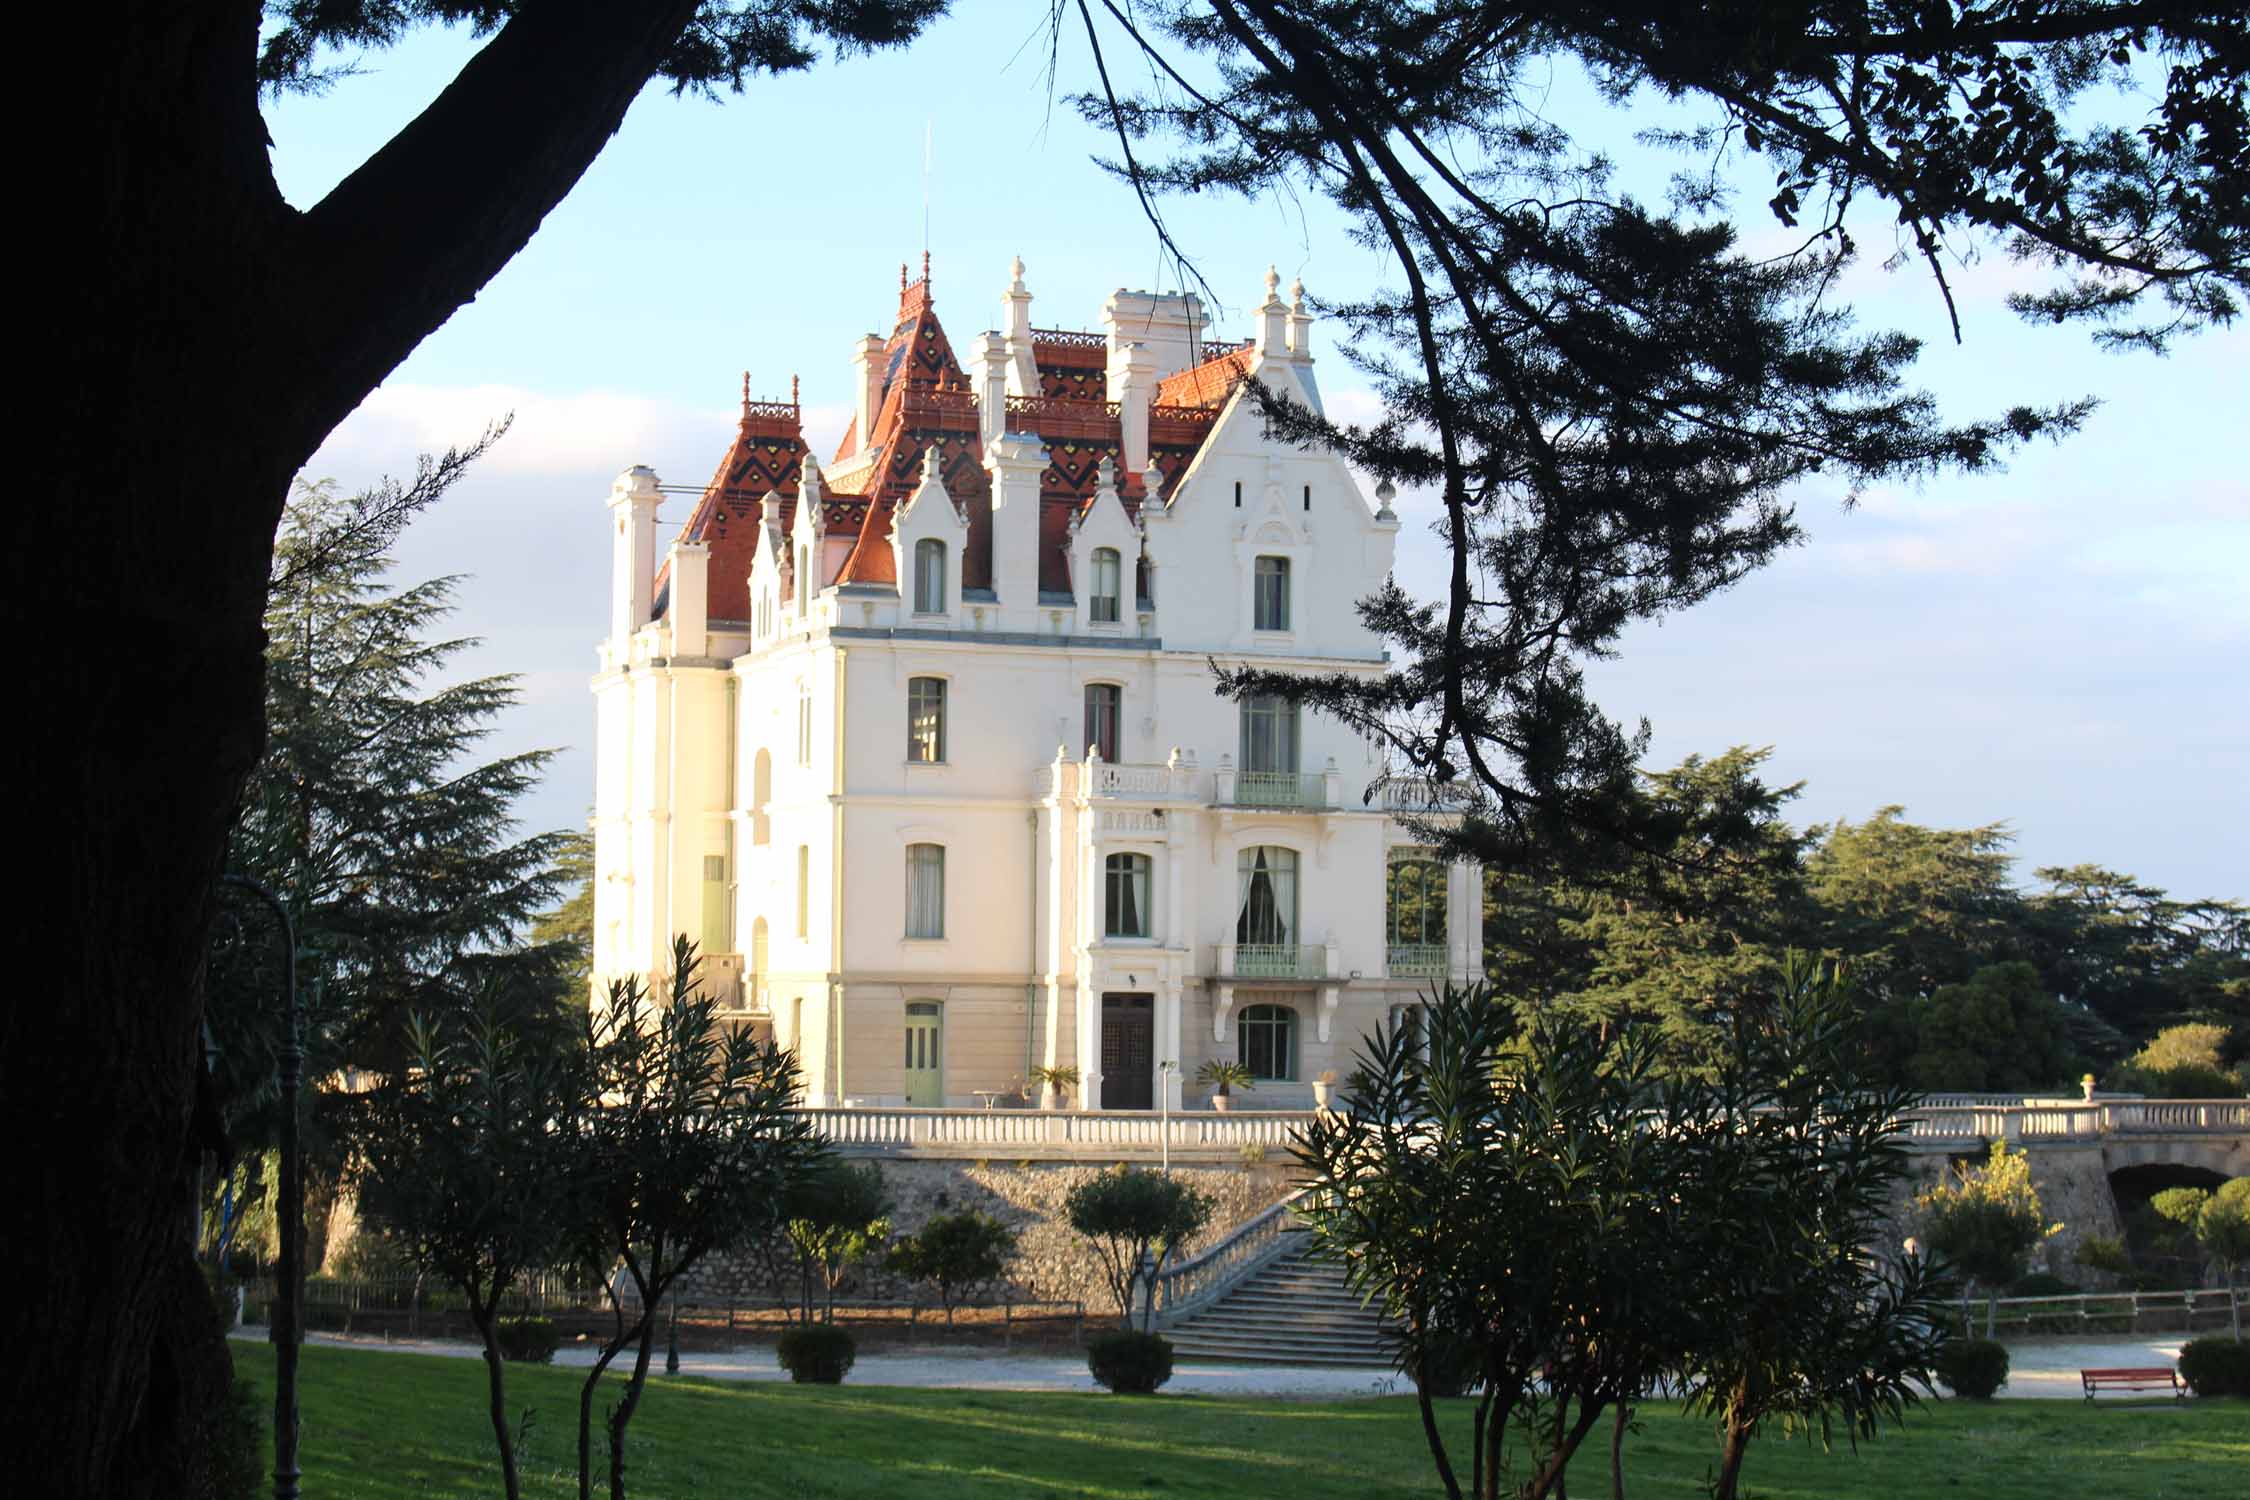 Château Valmy